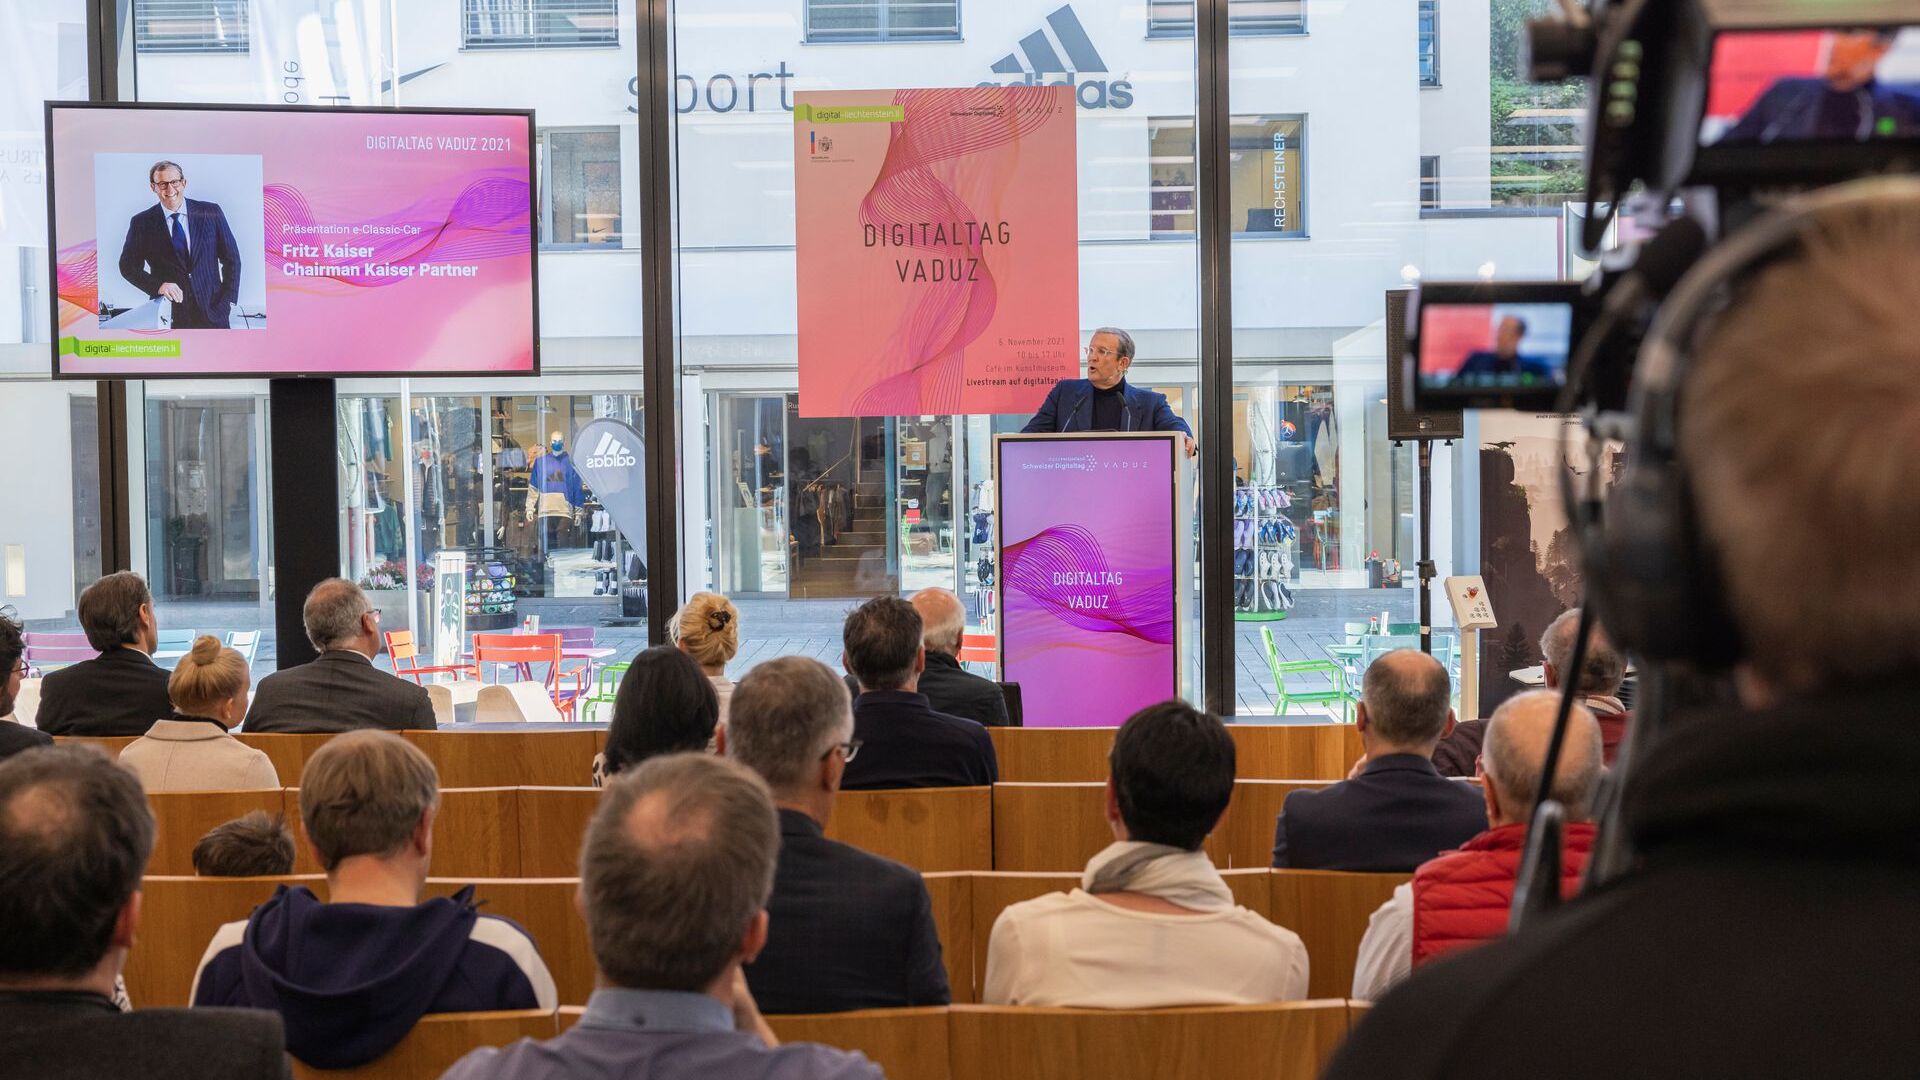 "Digitaltag Vaduz" ได้รับการต้อนรับจาก Kunstmuseum เมืองหลวงของราชรัฐลิกเตนสไตน์ในวันเสาร์ที่ 6 พฤศจิกายน 2021: คำปราศรัยของ Fritz Kaiser ประธานและเจ้าของ Kaiser Partner